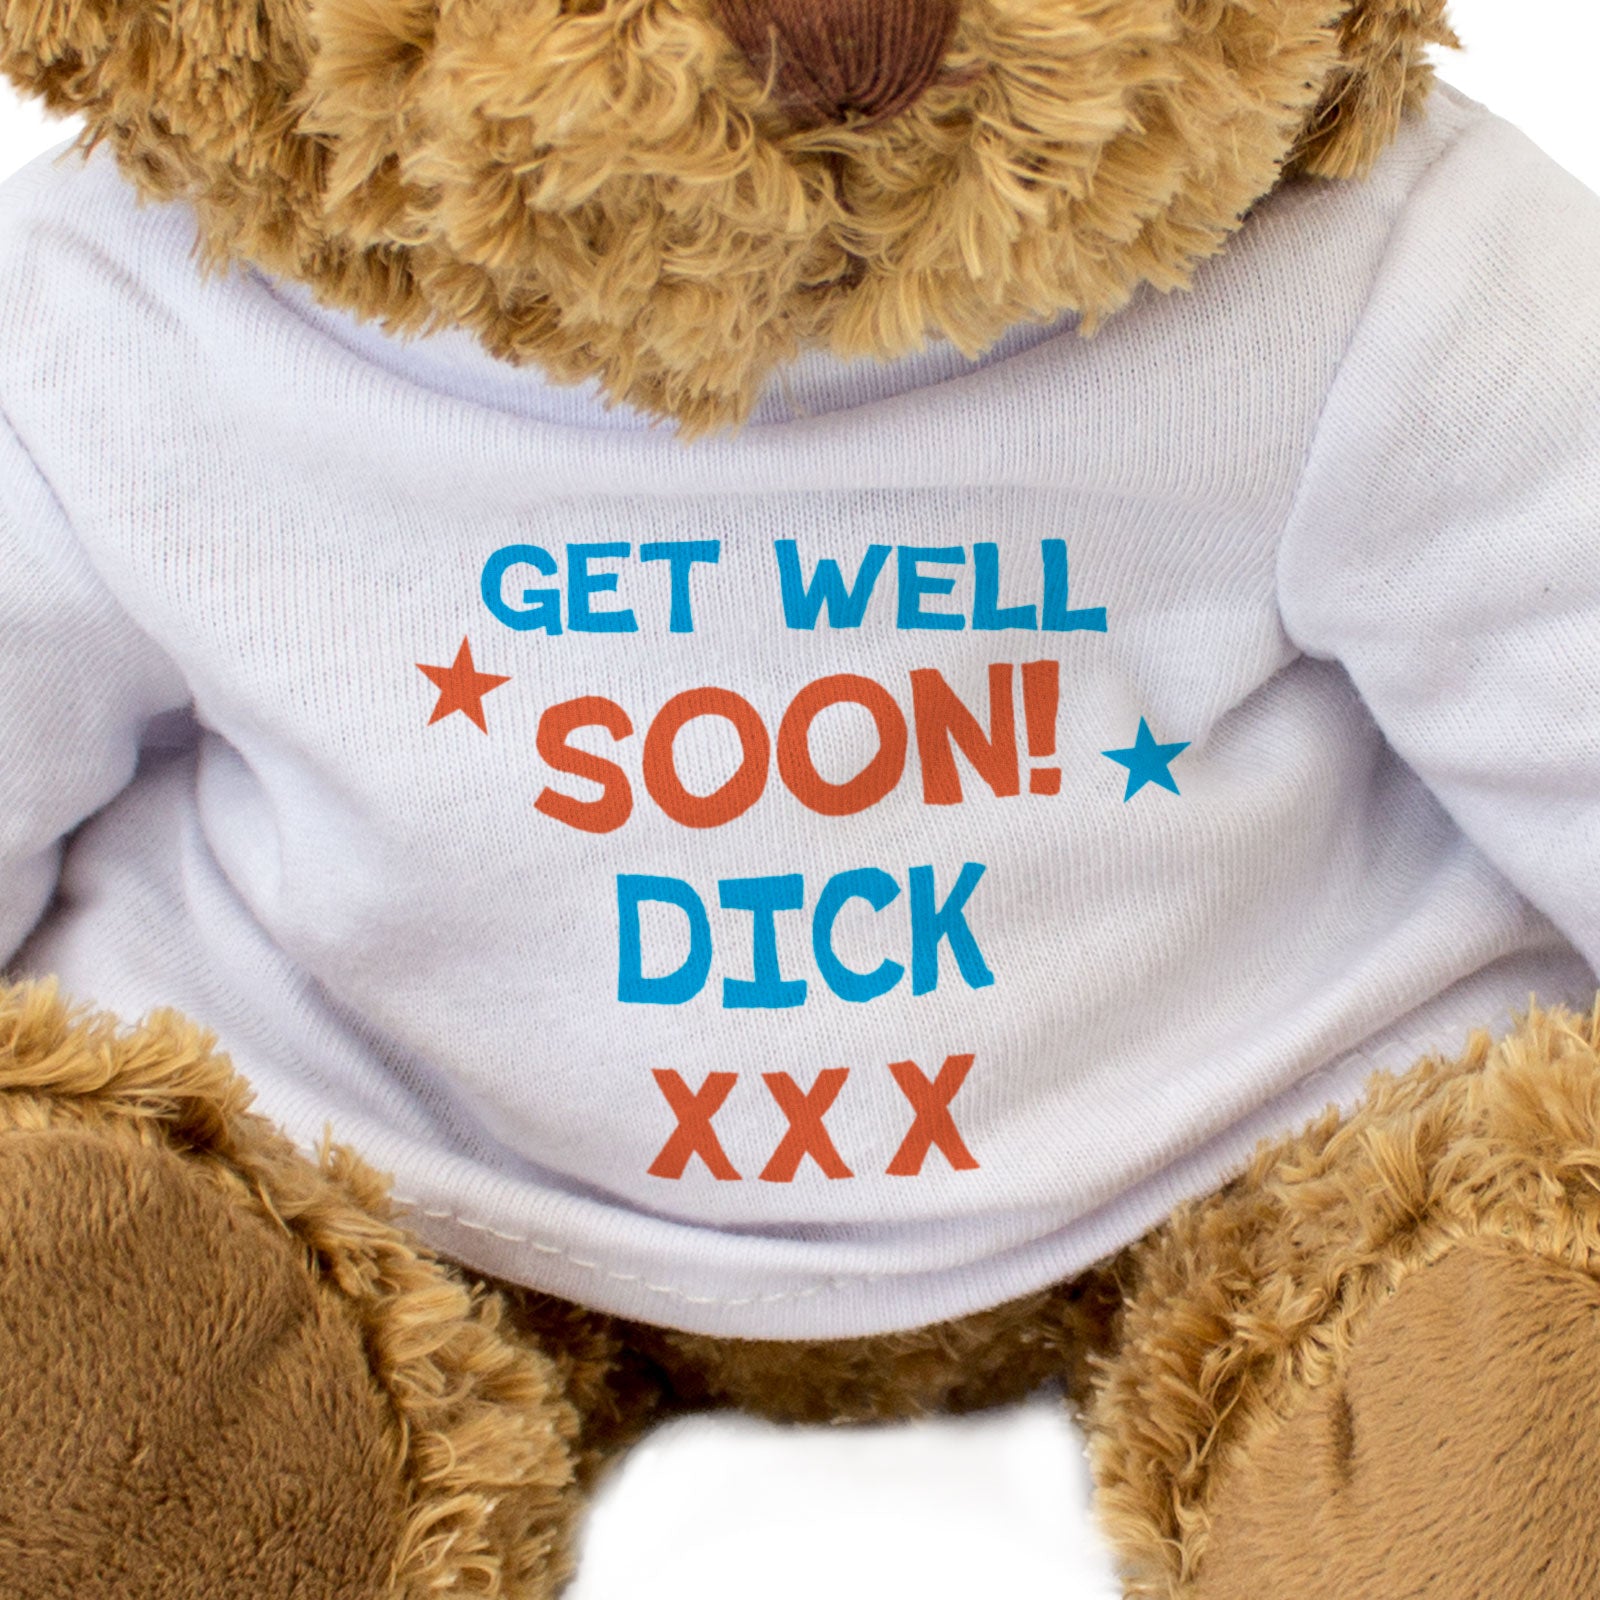 Get Well Soon Dick - Teddy Bear